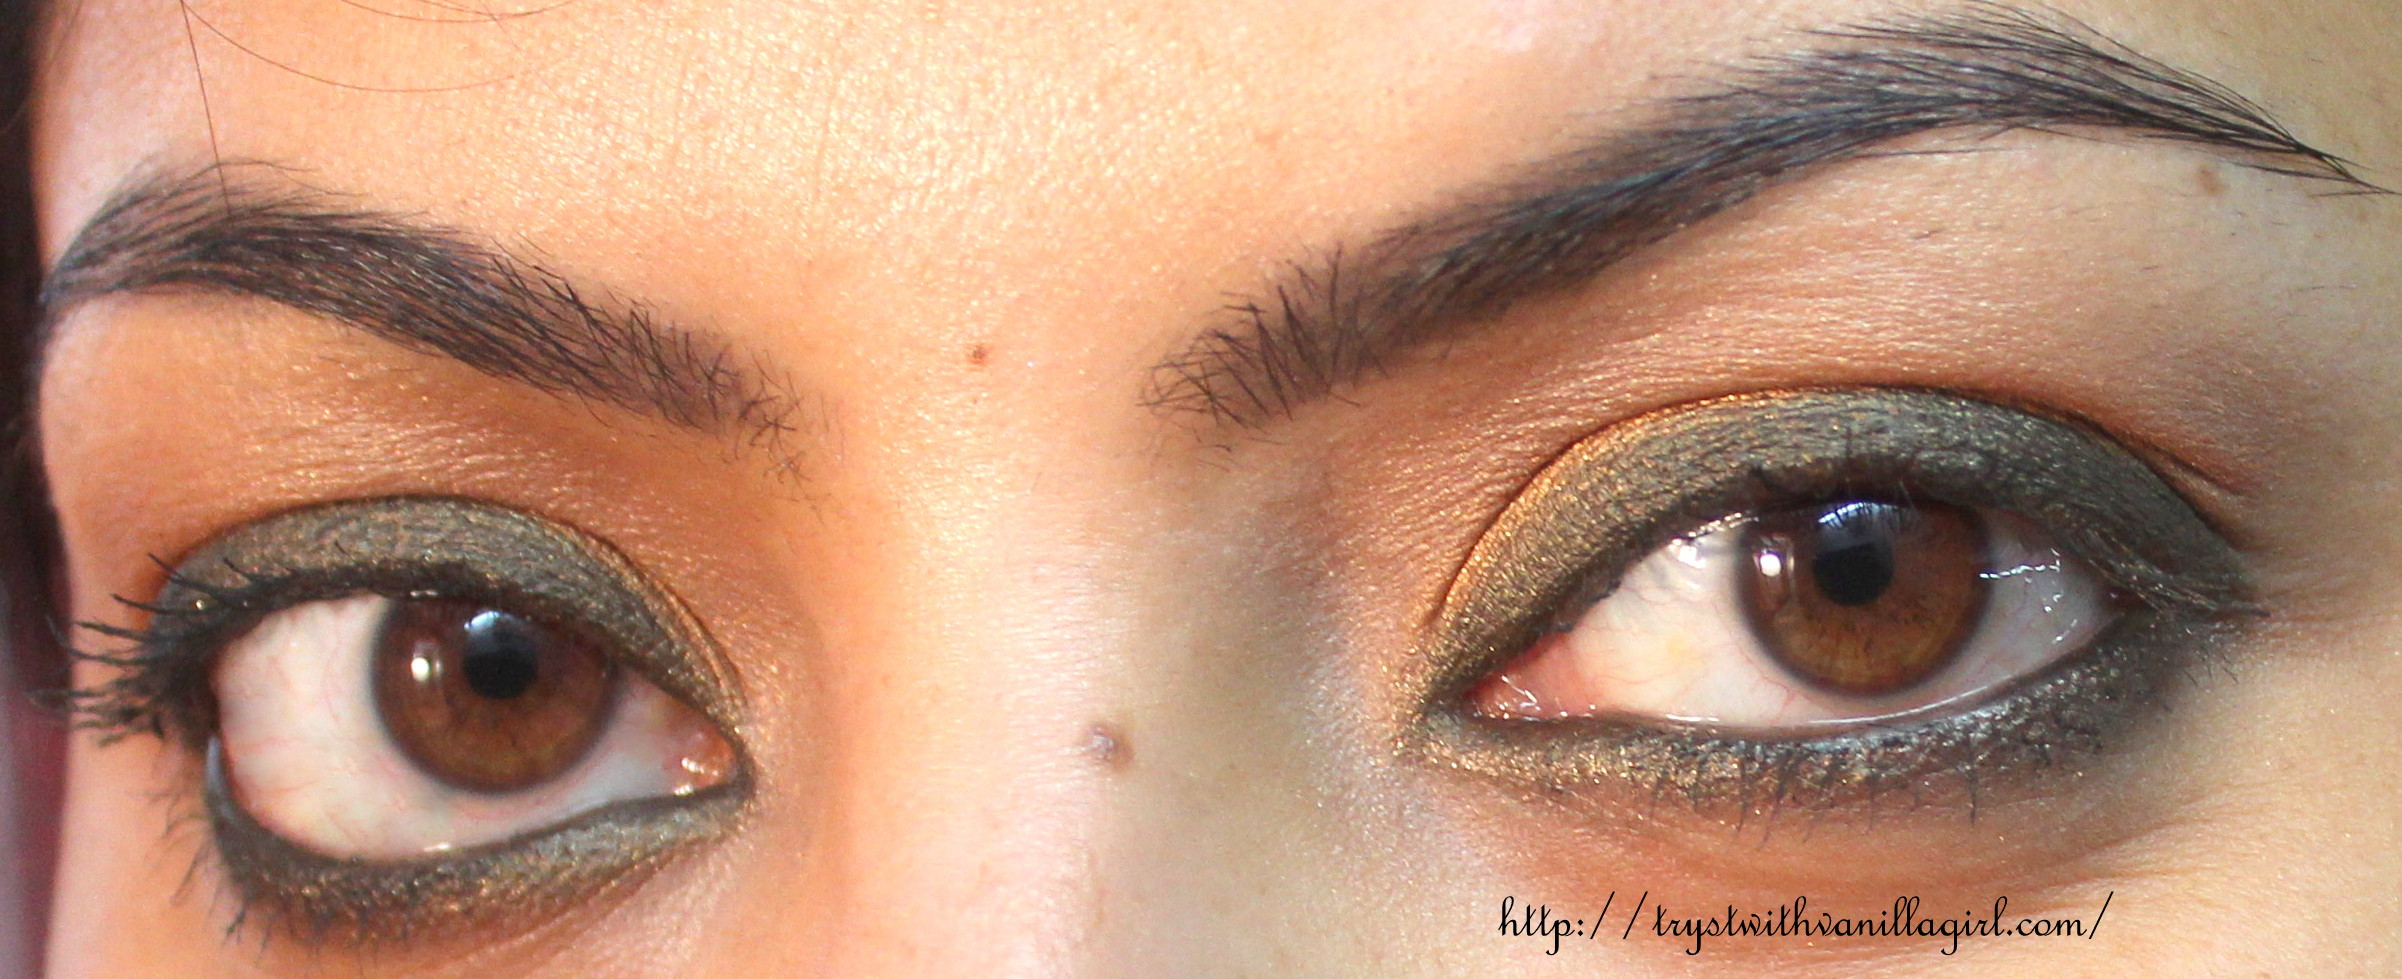 Affordable MakeUp Look,Bronze Eyeliner,Bourjois Khol and Contour 16 hr Eye pencil Bronze Raffine